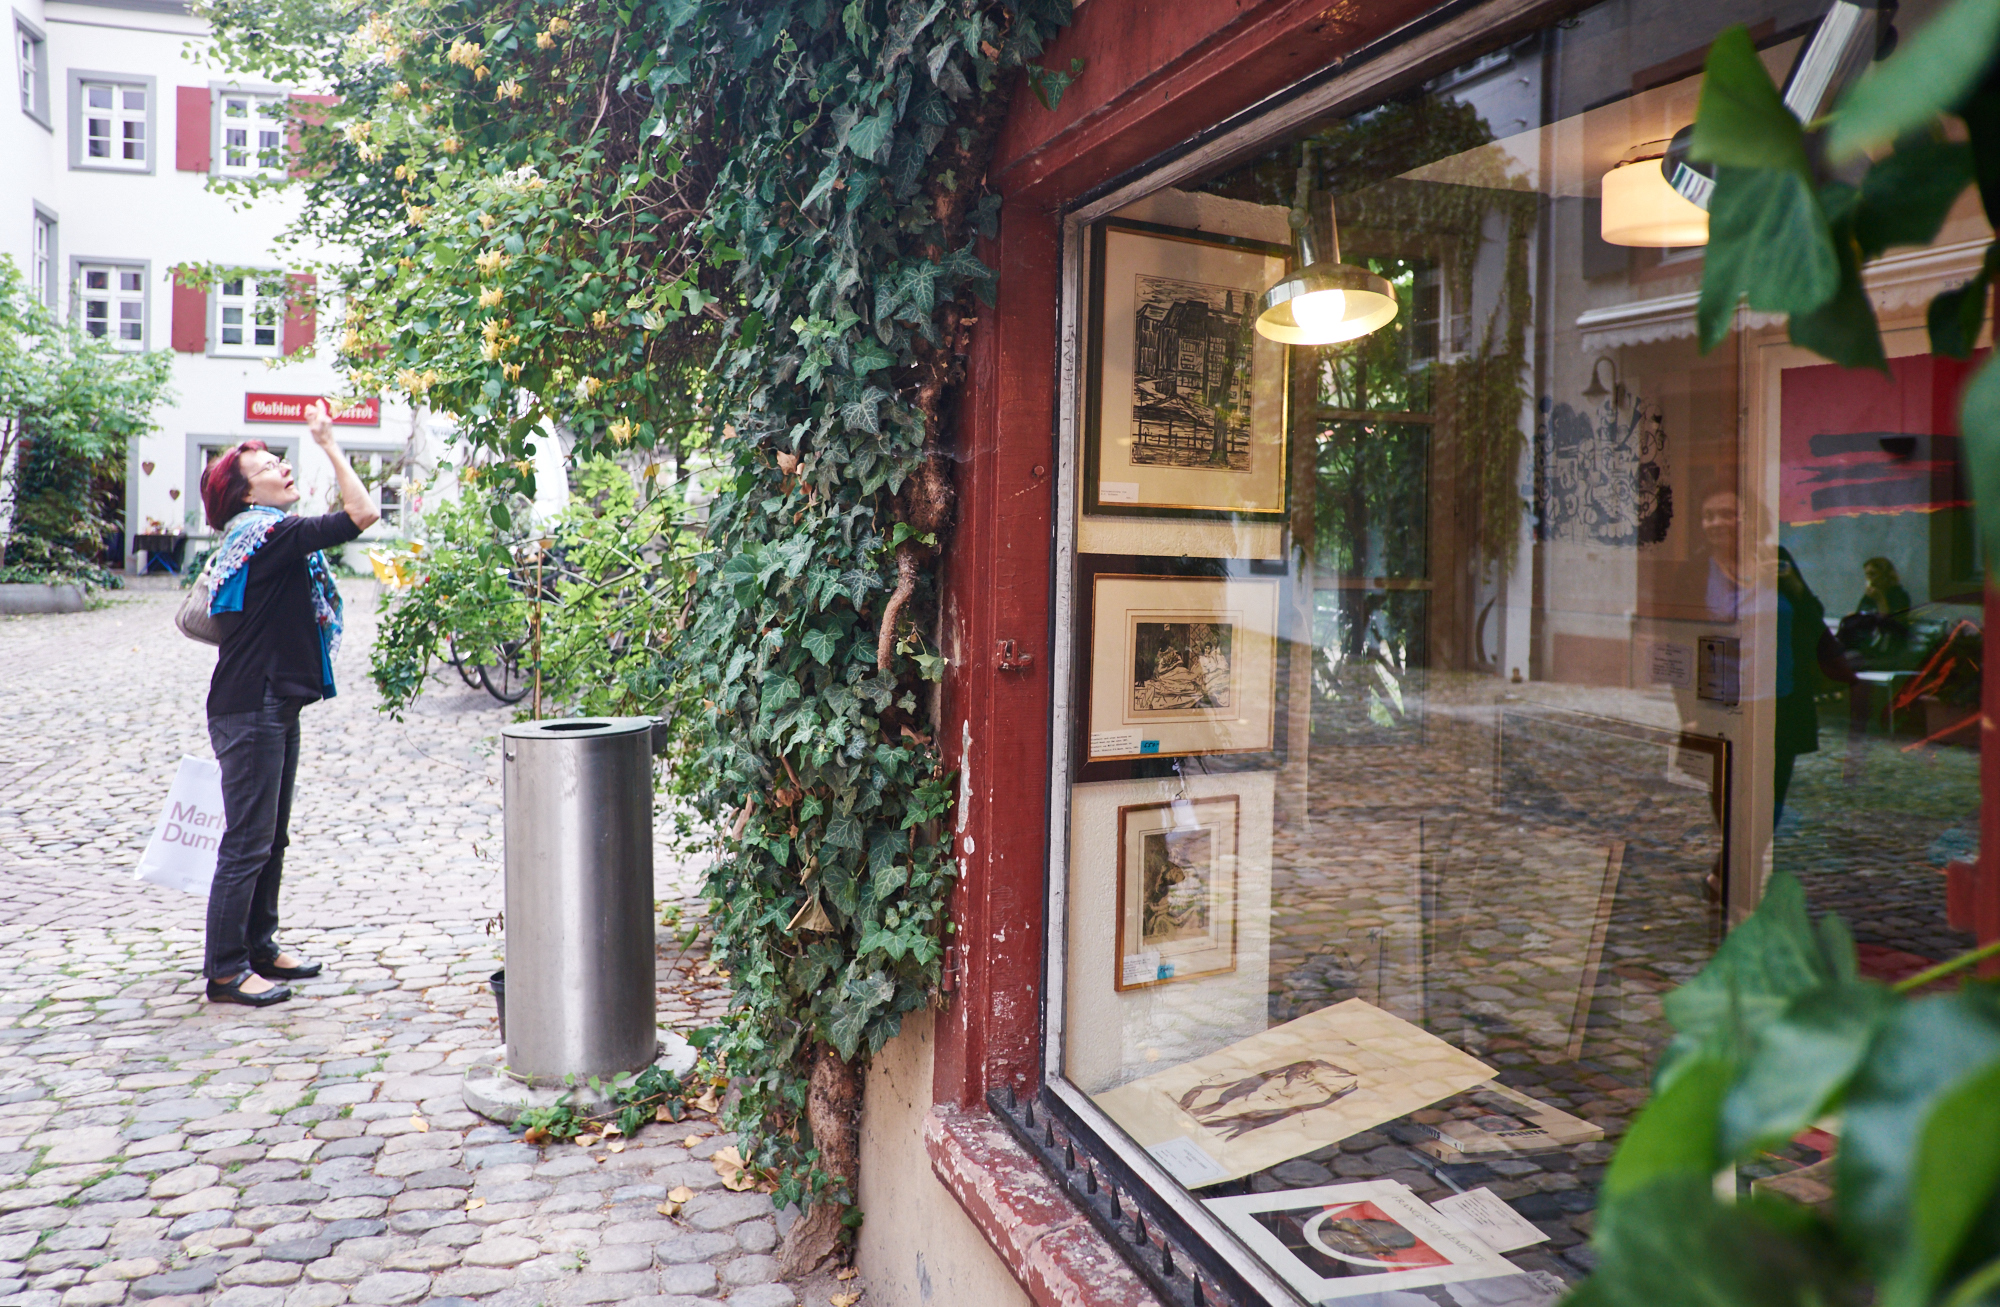 Eiblick in das Efeu bewachsene Schaufenster am Eingang des Andreasplatzes.